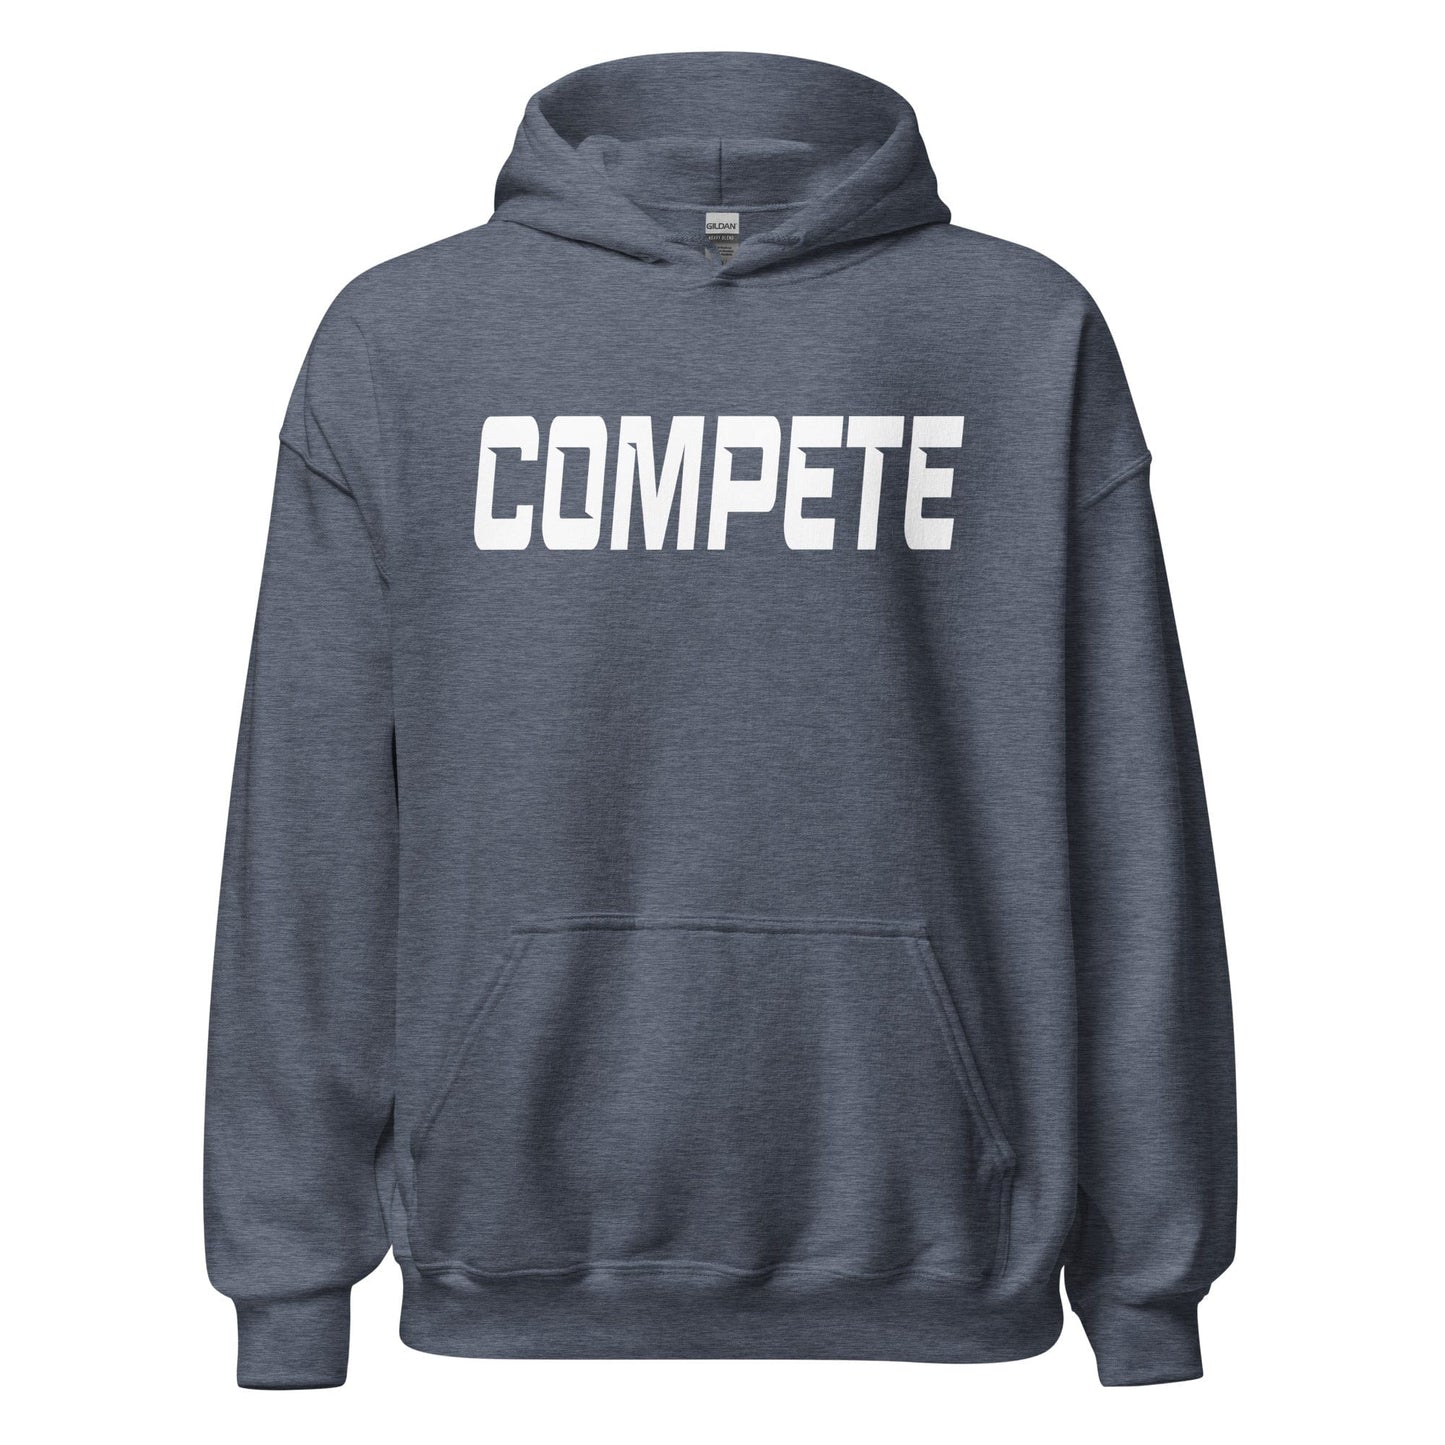 Compete - Adult Hoodie